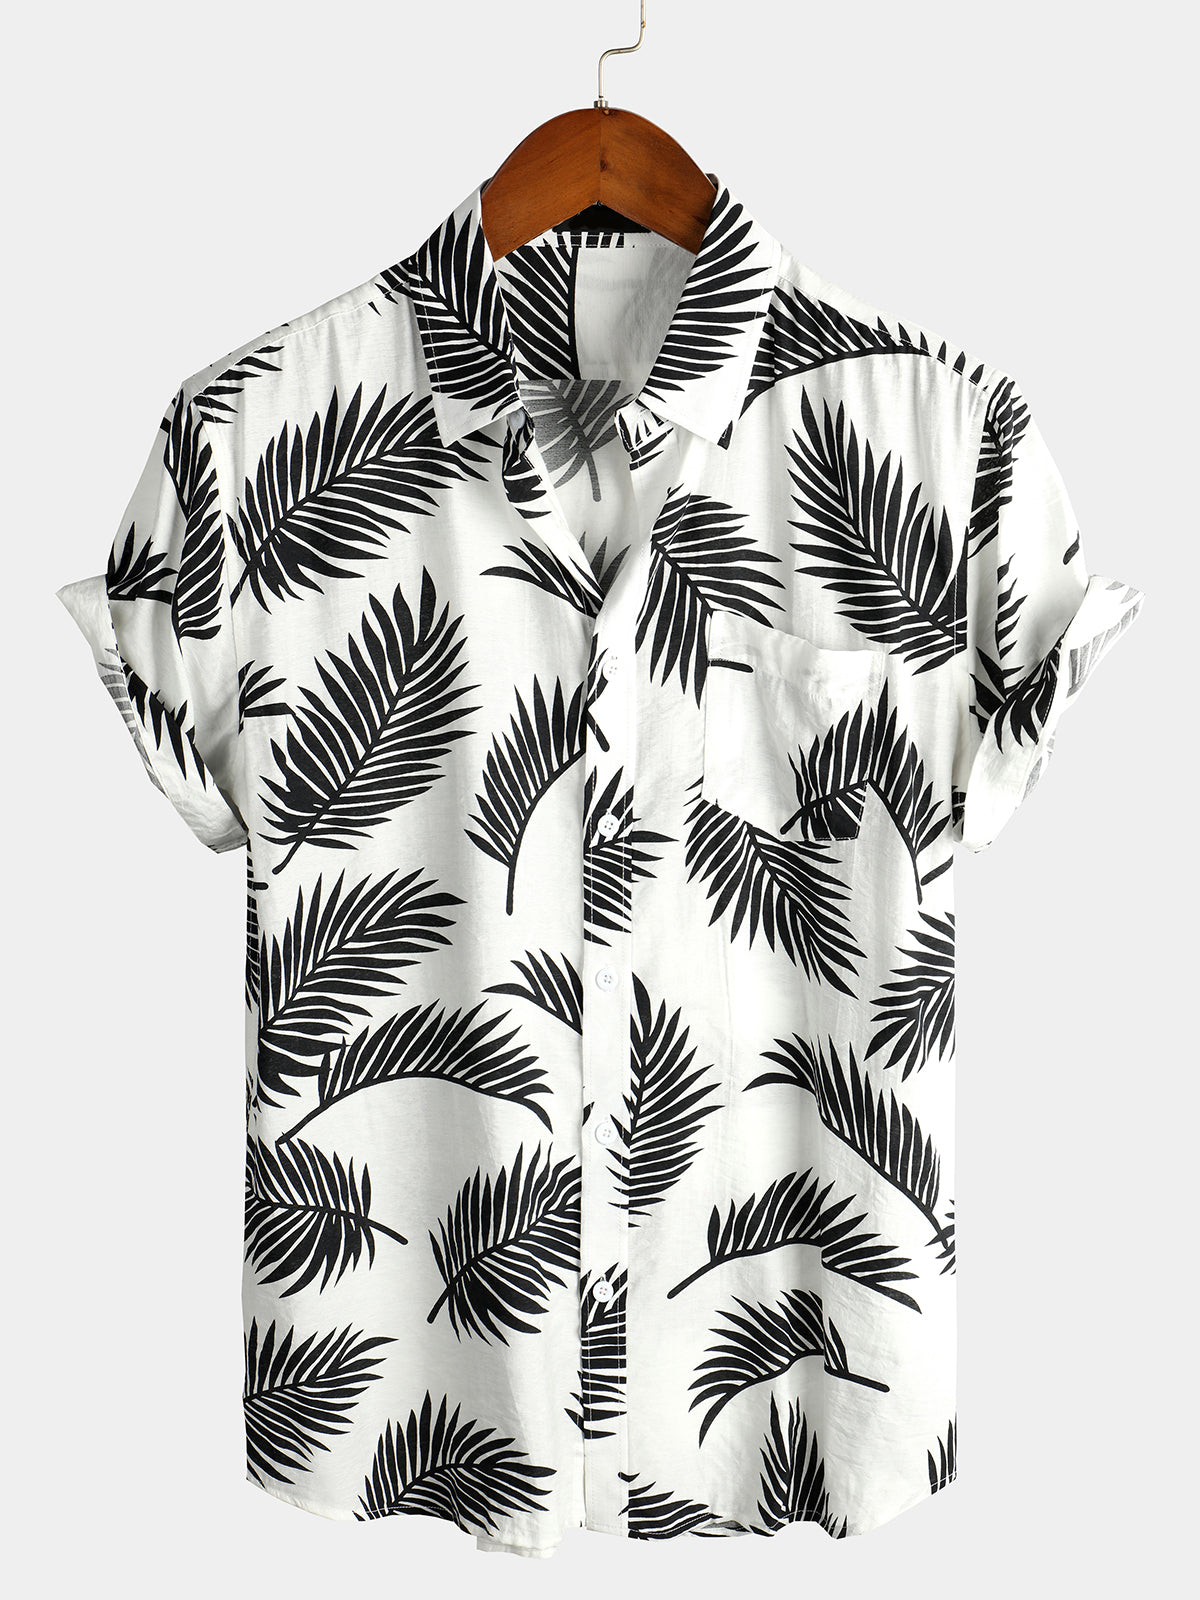 Men's Red Tropical Leaf Print Pocket Short Sleeve Shirt